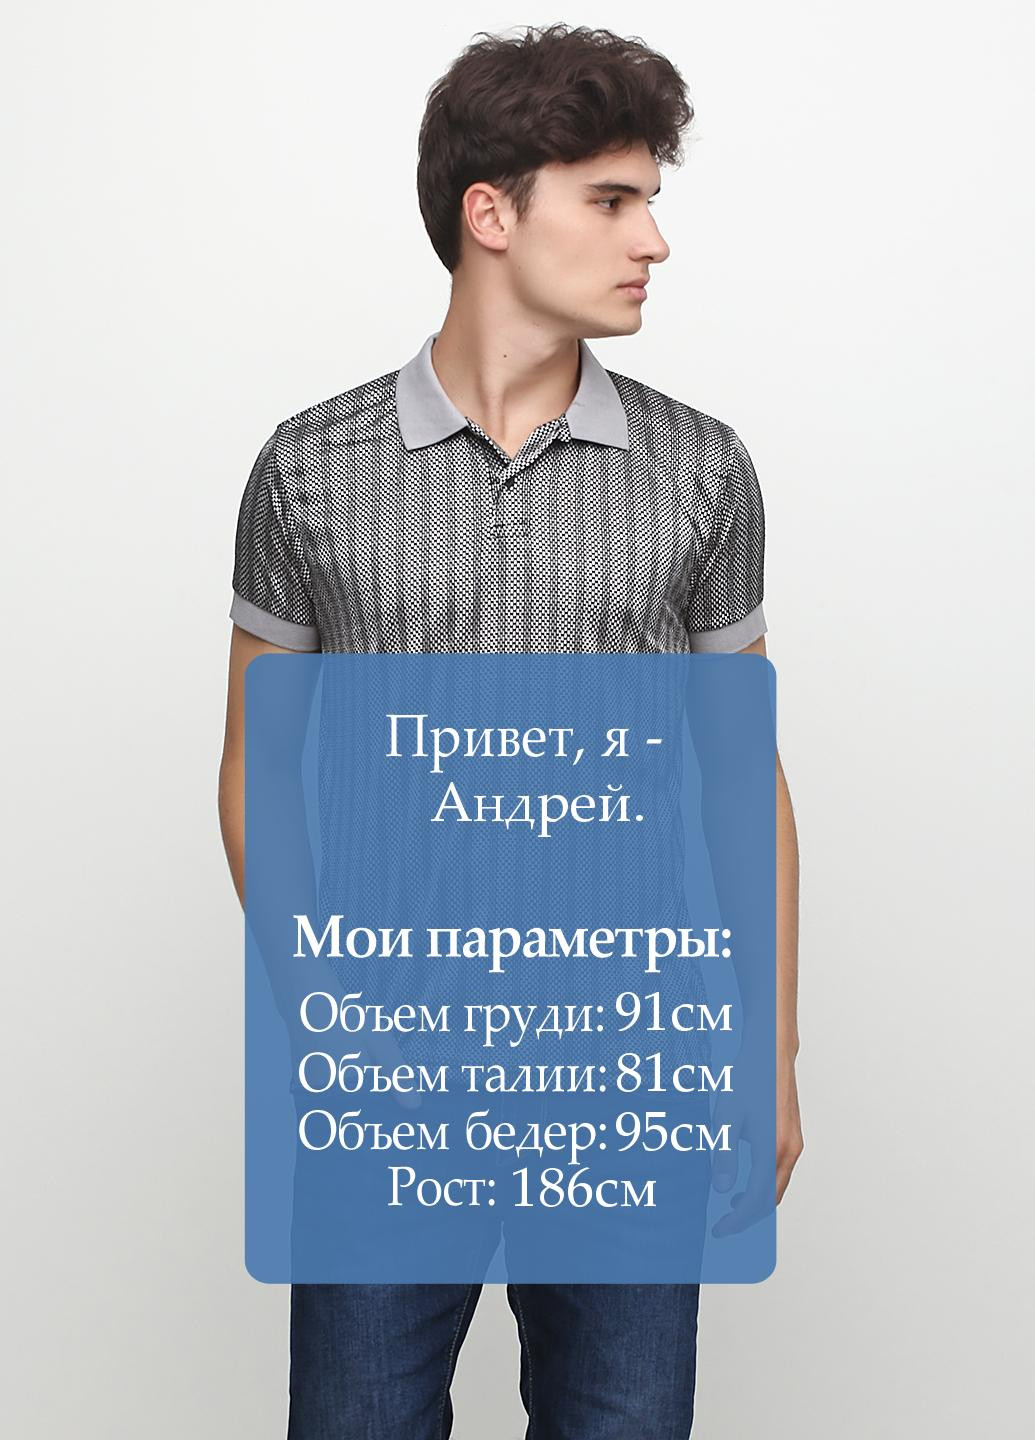 Серо-синяя футболка-поло для мужчин Chiarotex с геометрическим узором